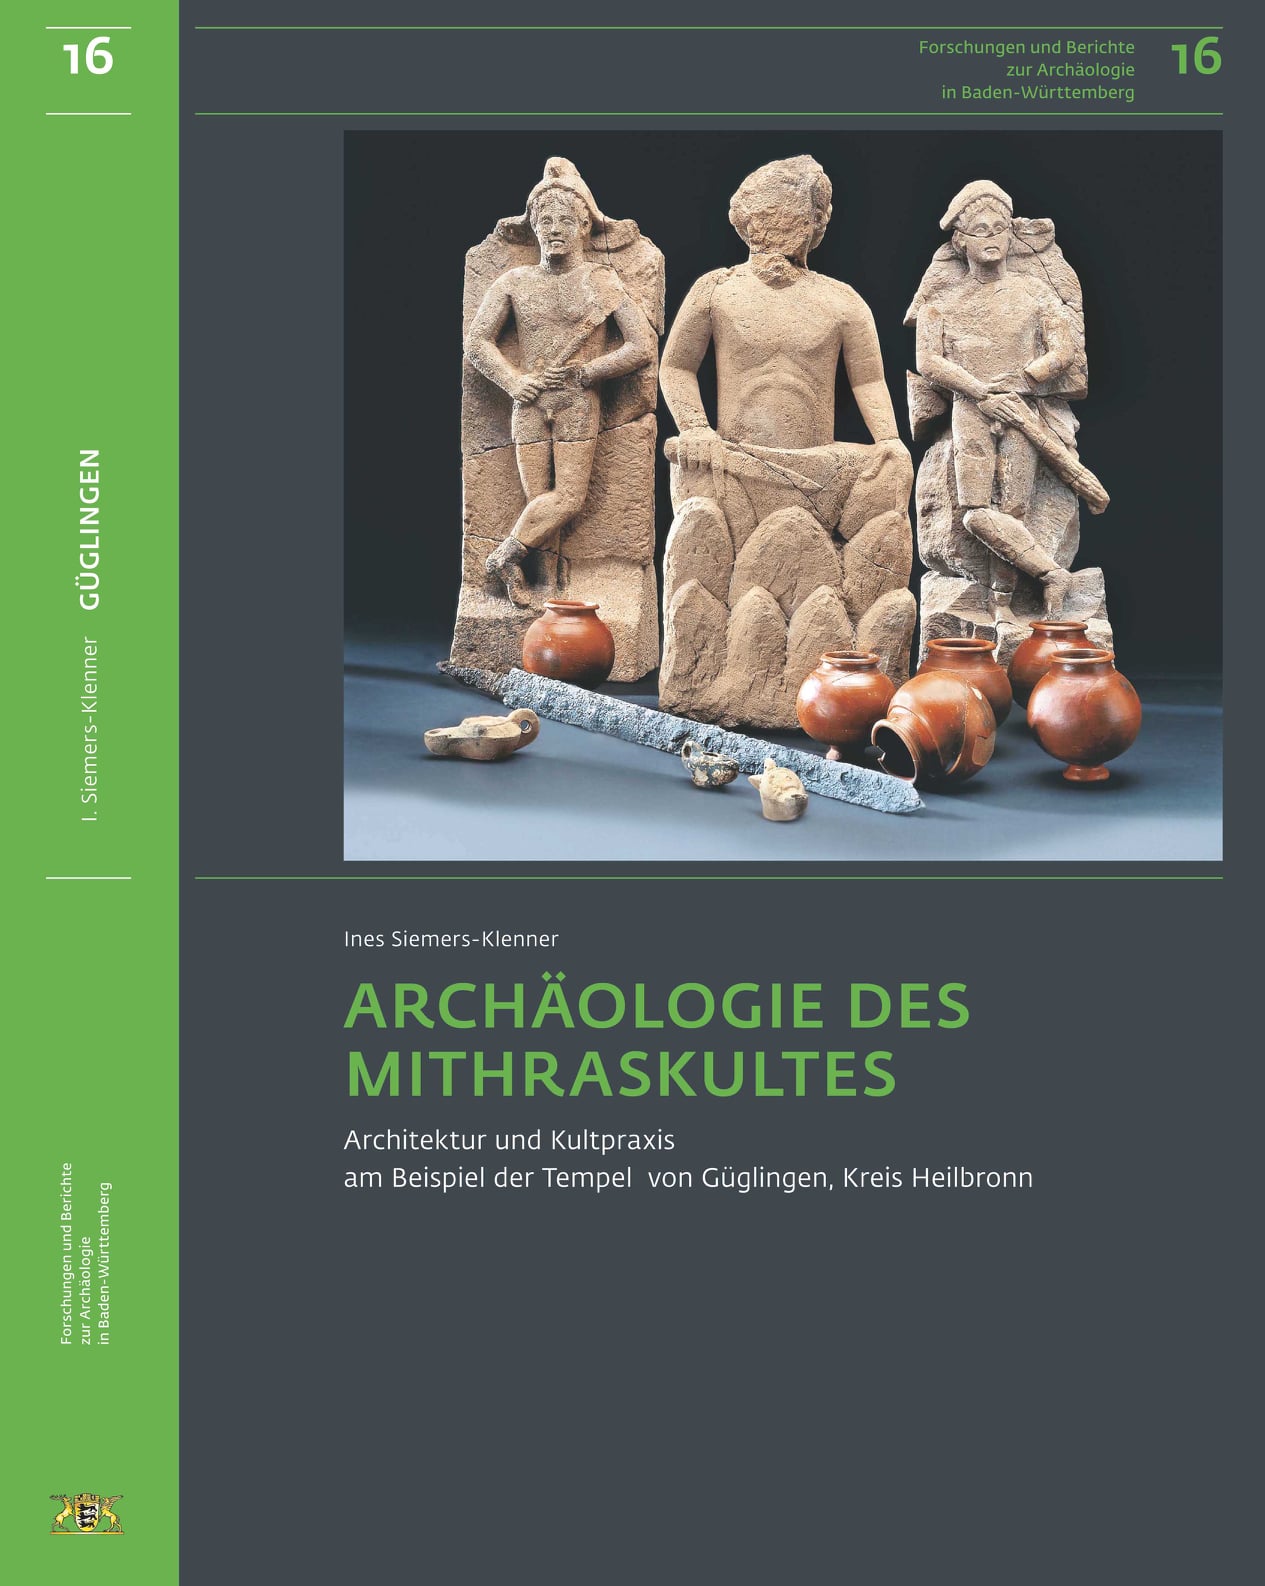 Archäologie des Mithraskultes. Architektur und Kultpraxis am Beispiel der Tempel von Güglingen, Kreis Heilbronn